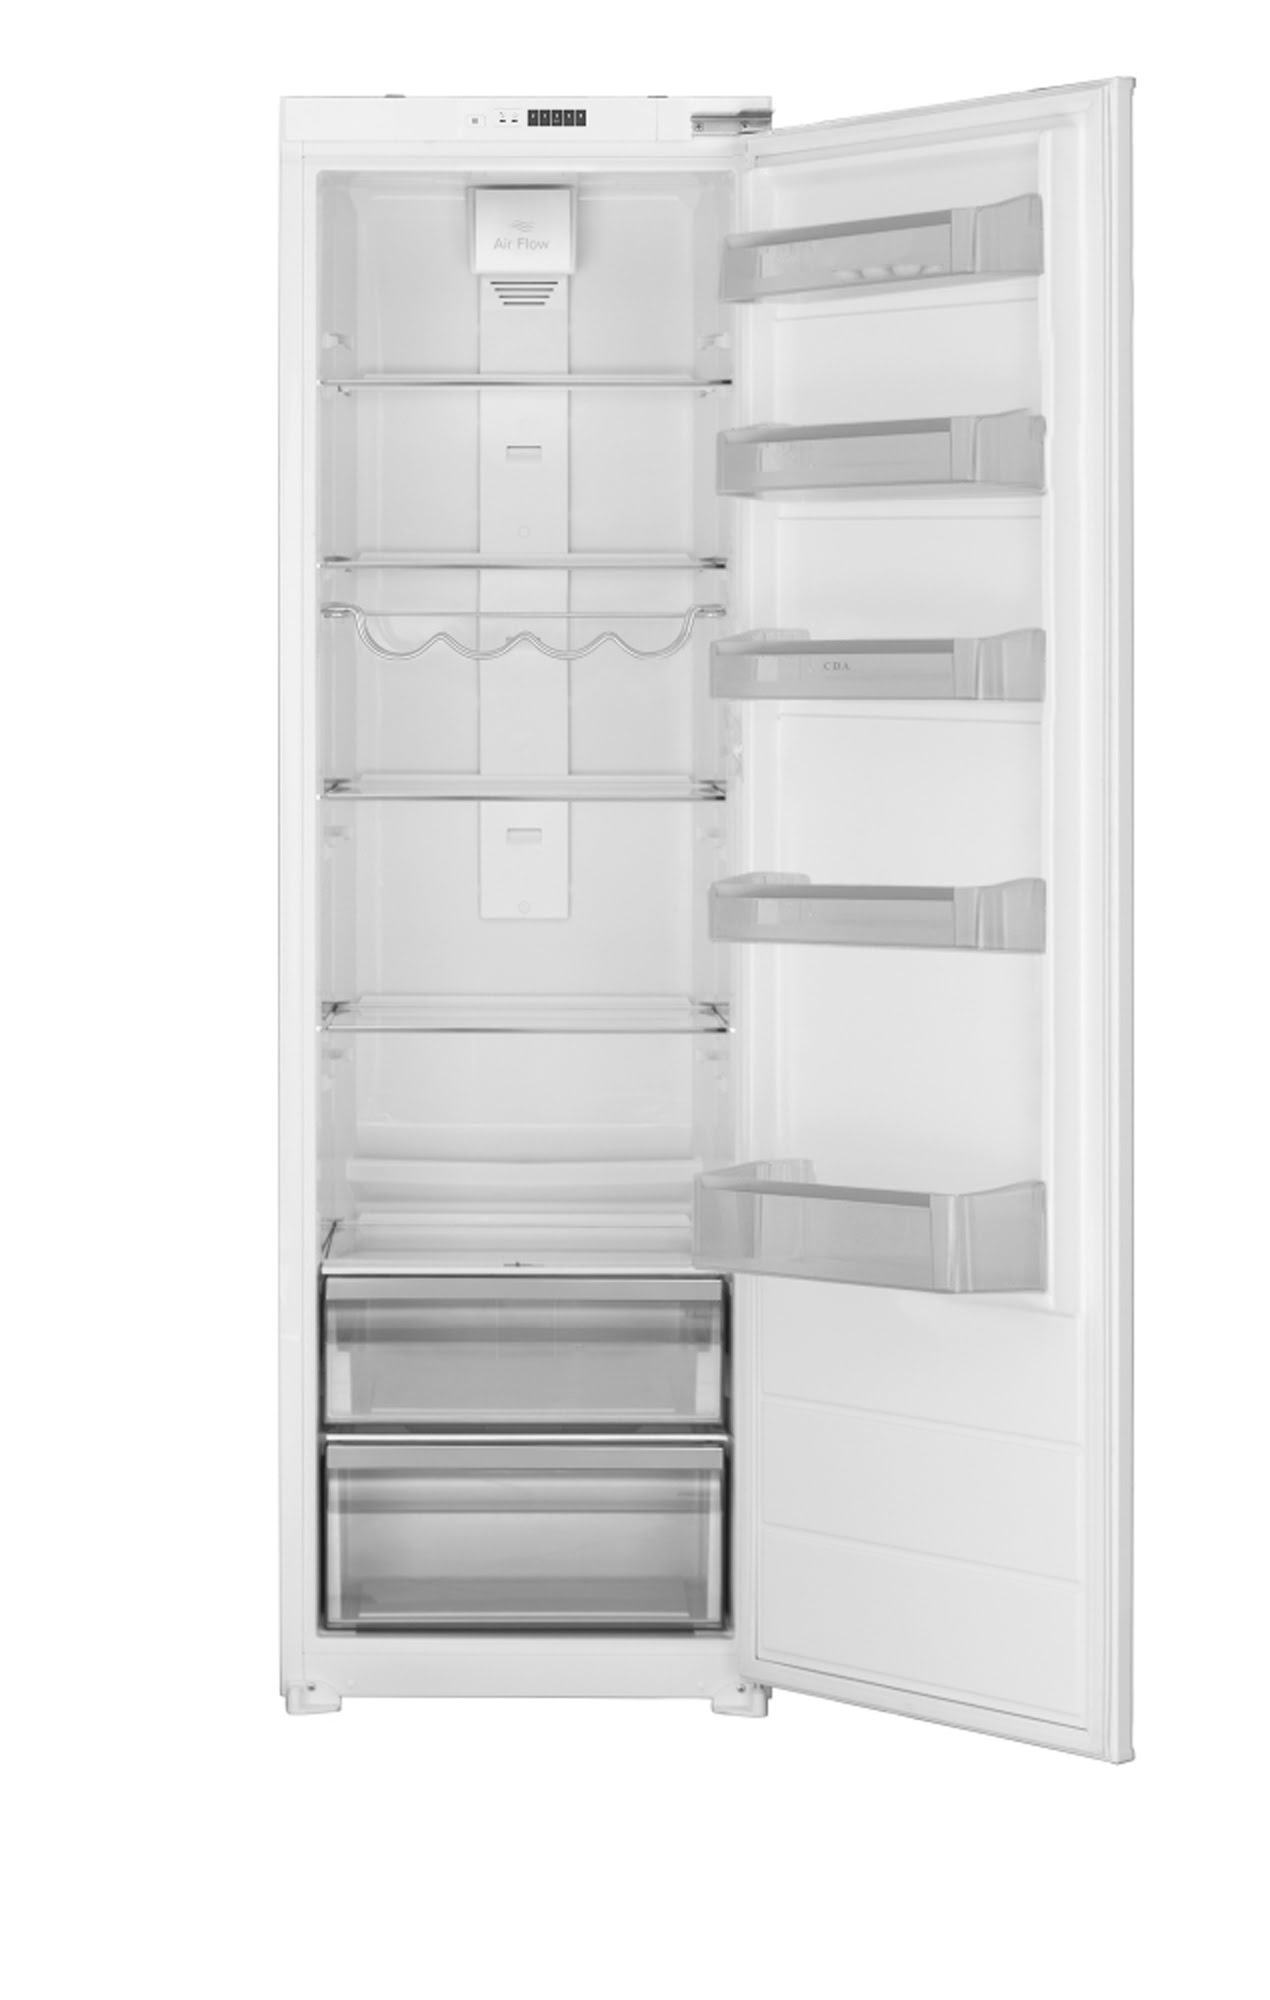 Integrated full height larder fridge